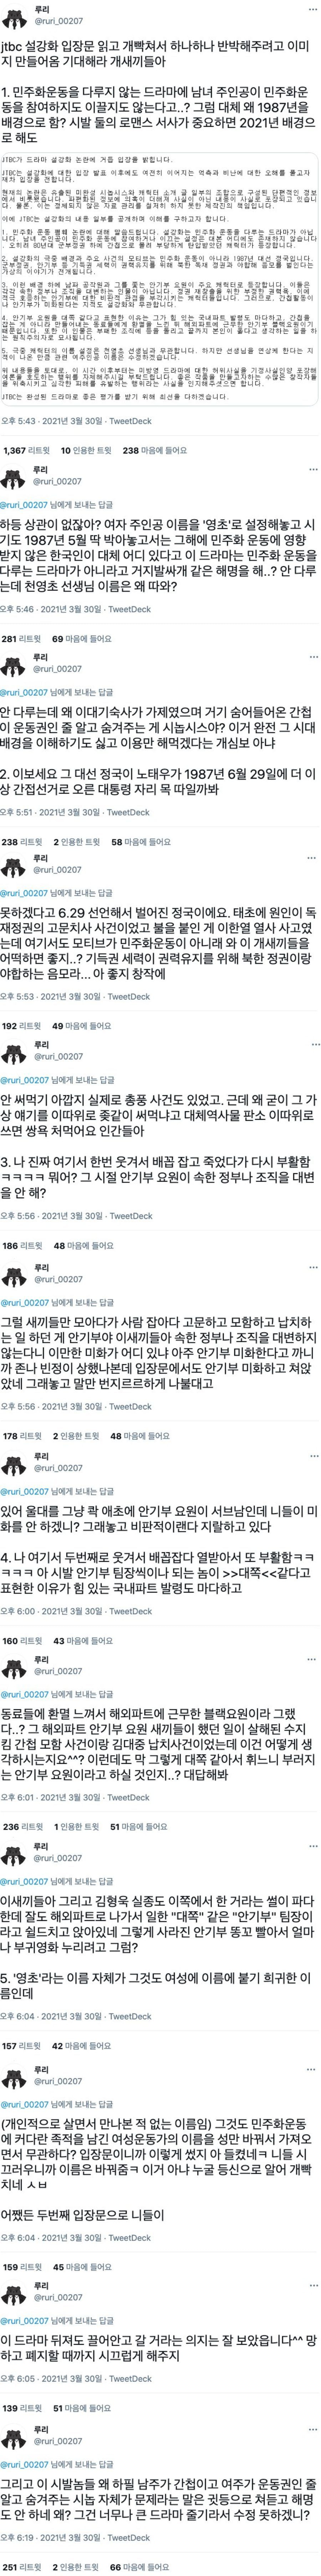 [정보/소식] JTBC 설강화 입장문 읽고 화나서 하나하나 반박 | 인스티즈